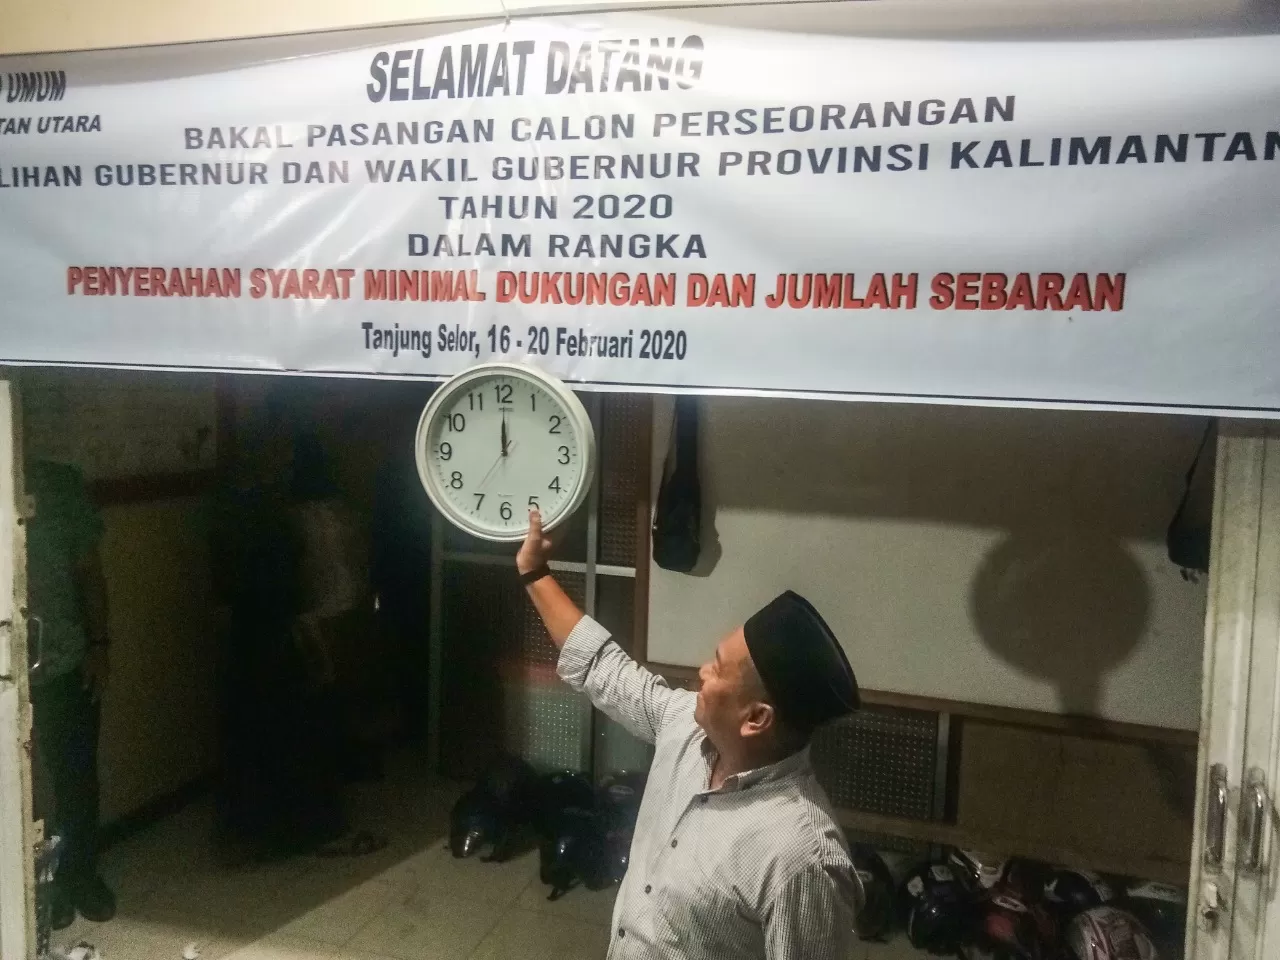 RESMI BERAKHIR : Ketua KPU Kaltara, Suryanata Al-Islami menunjukkan waktu tepat pukul 00.00 Wita, Kamis (20/2) menandakan ditutupnya penyerahan syarat dukungan dan sebaran bagi pasangan calon jalur independen.